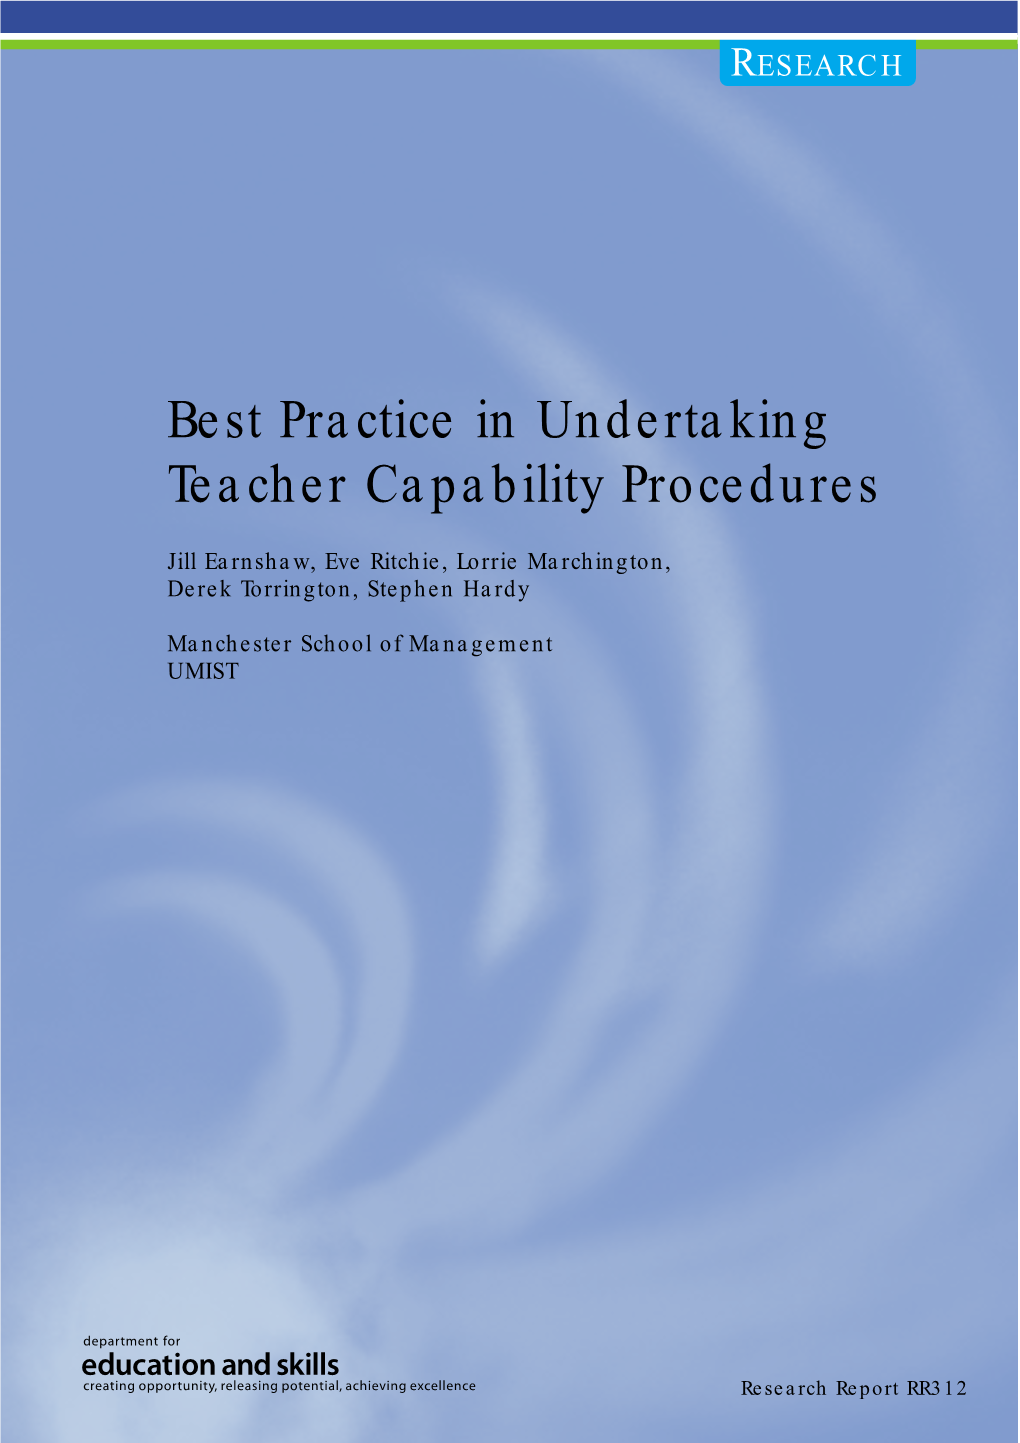 Best Practice in Undertaking Teacher Capability Procedures